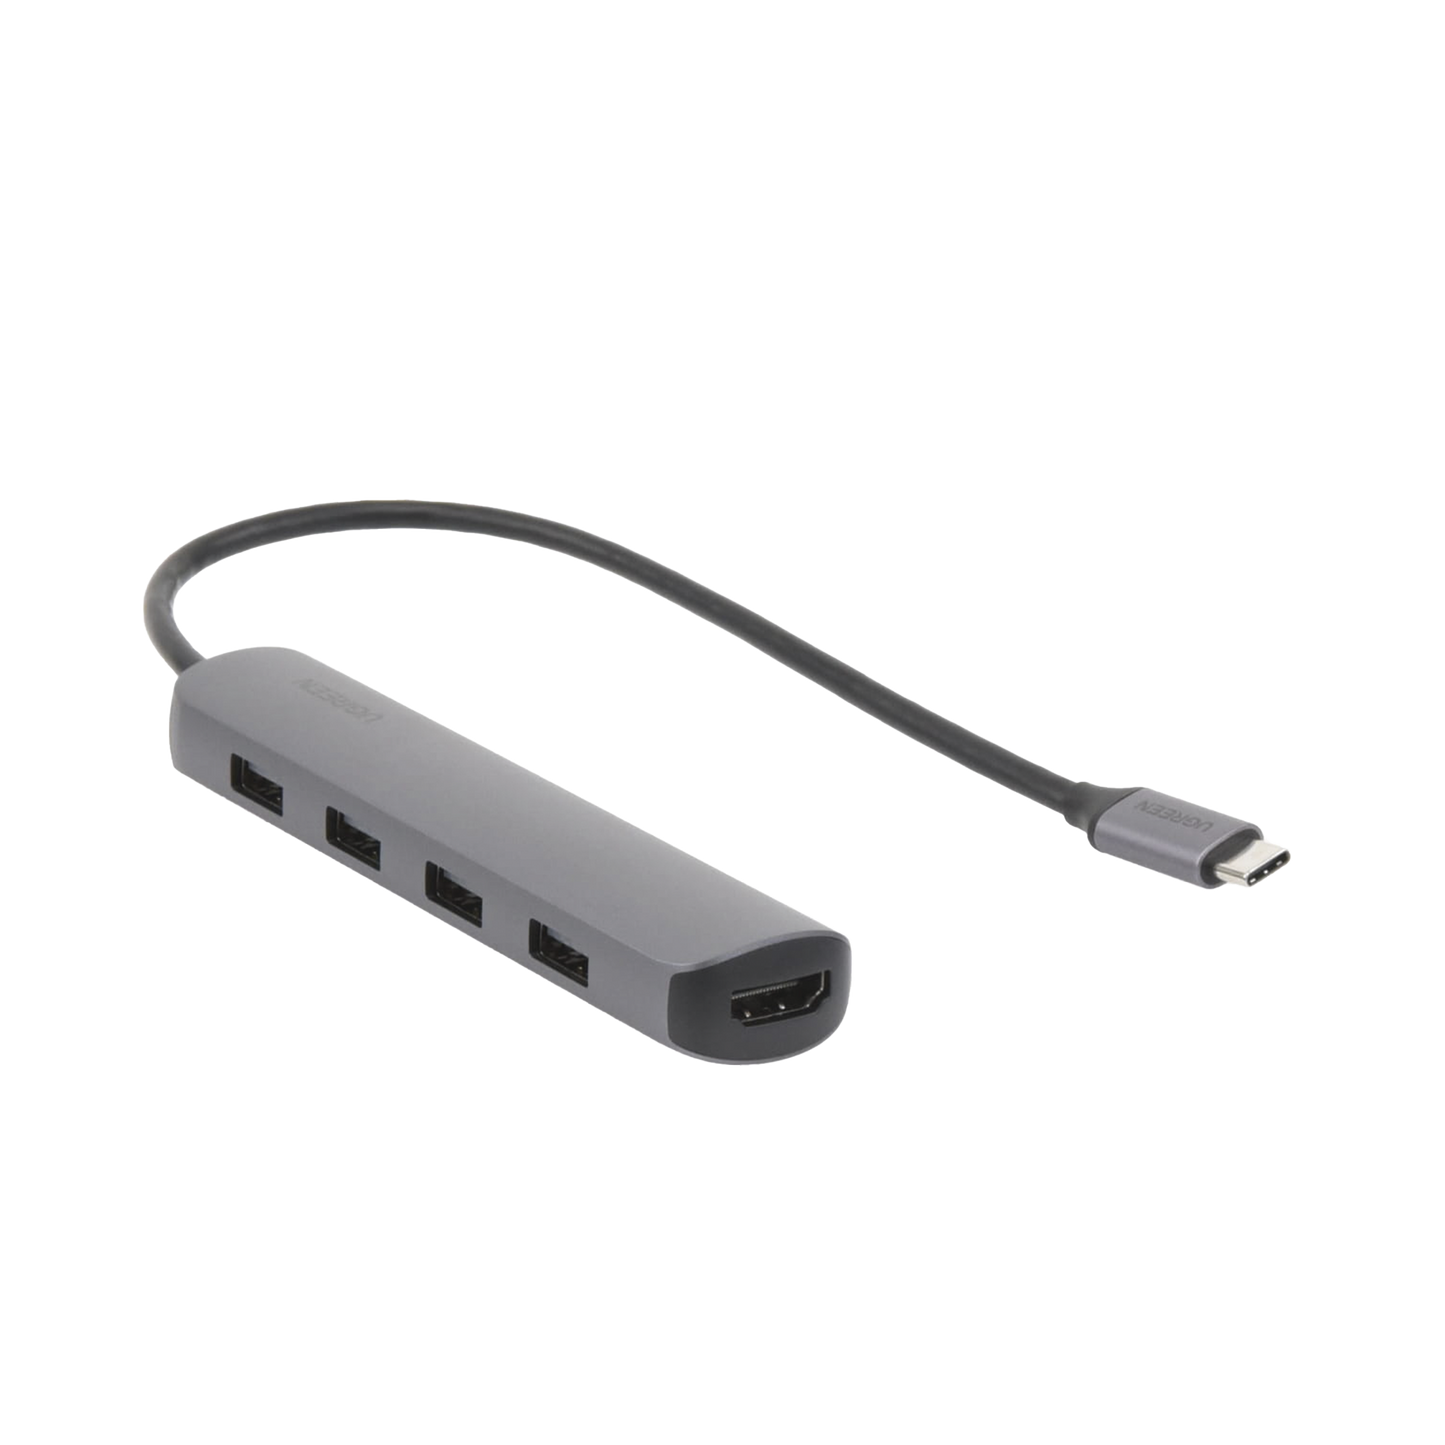 HUB USB-C Multipuertos / 4 Puertos USB-A 3.0 /  HDMI 4K@30Hz / USB 3.0 a 5Gbps / Chip Inteligente Incorporado / 5 en 1 / Carcasa de Aluminio.